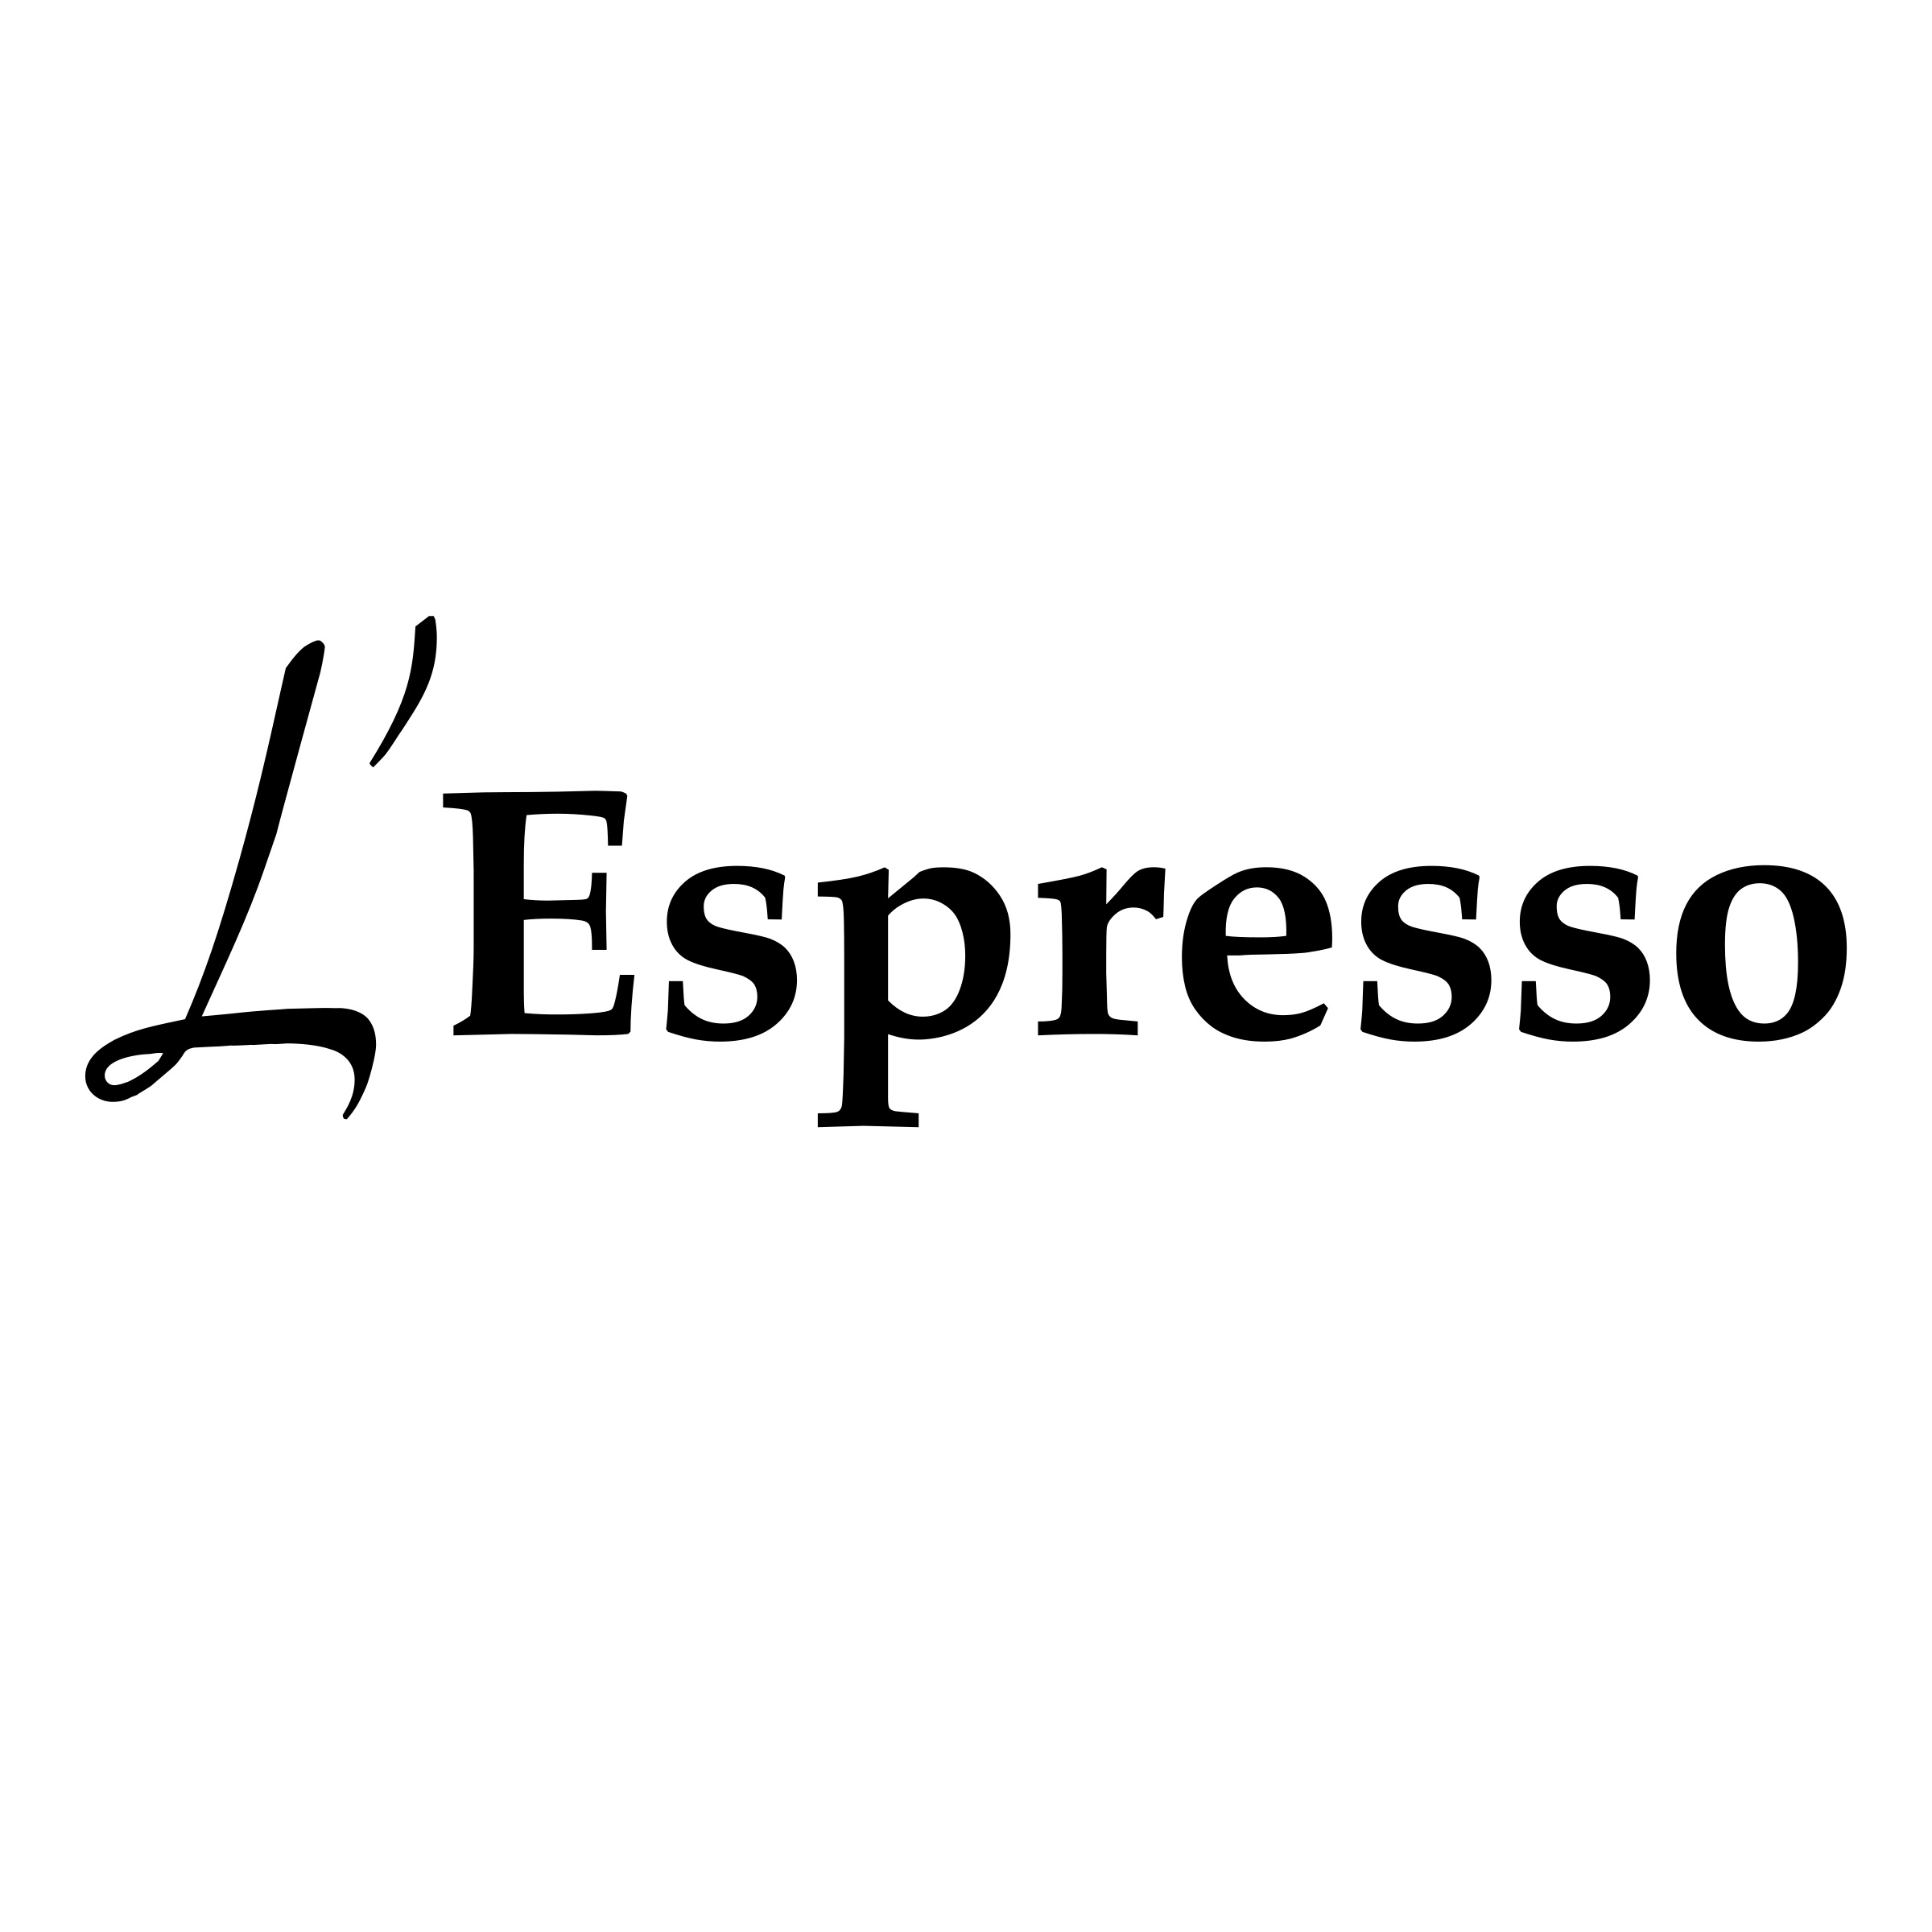 l-espresso-caffe-fabbrica-macchinette-caffè-espresso-pulia-manutenzione-macchina-caffe-cialdoro-aggiusta-e-ripara